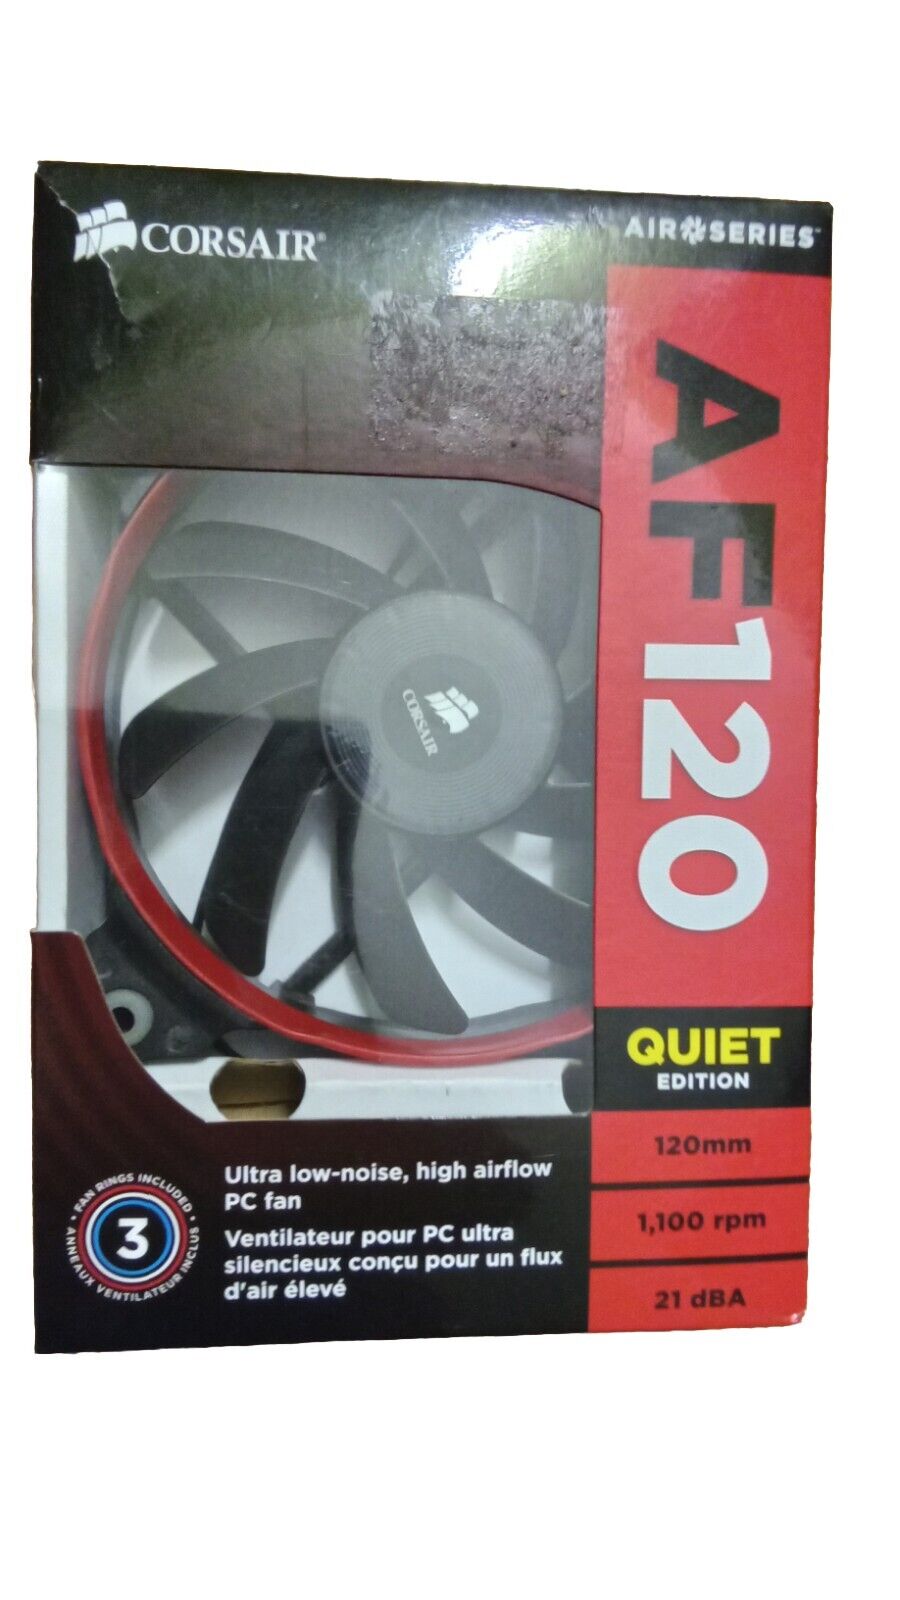 1 Consair AF120 Air Series PC Fan Quiet Edition